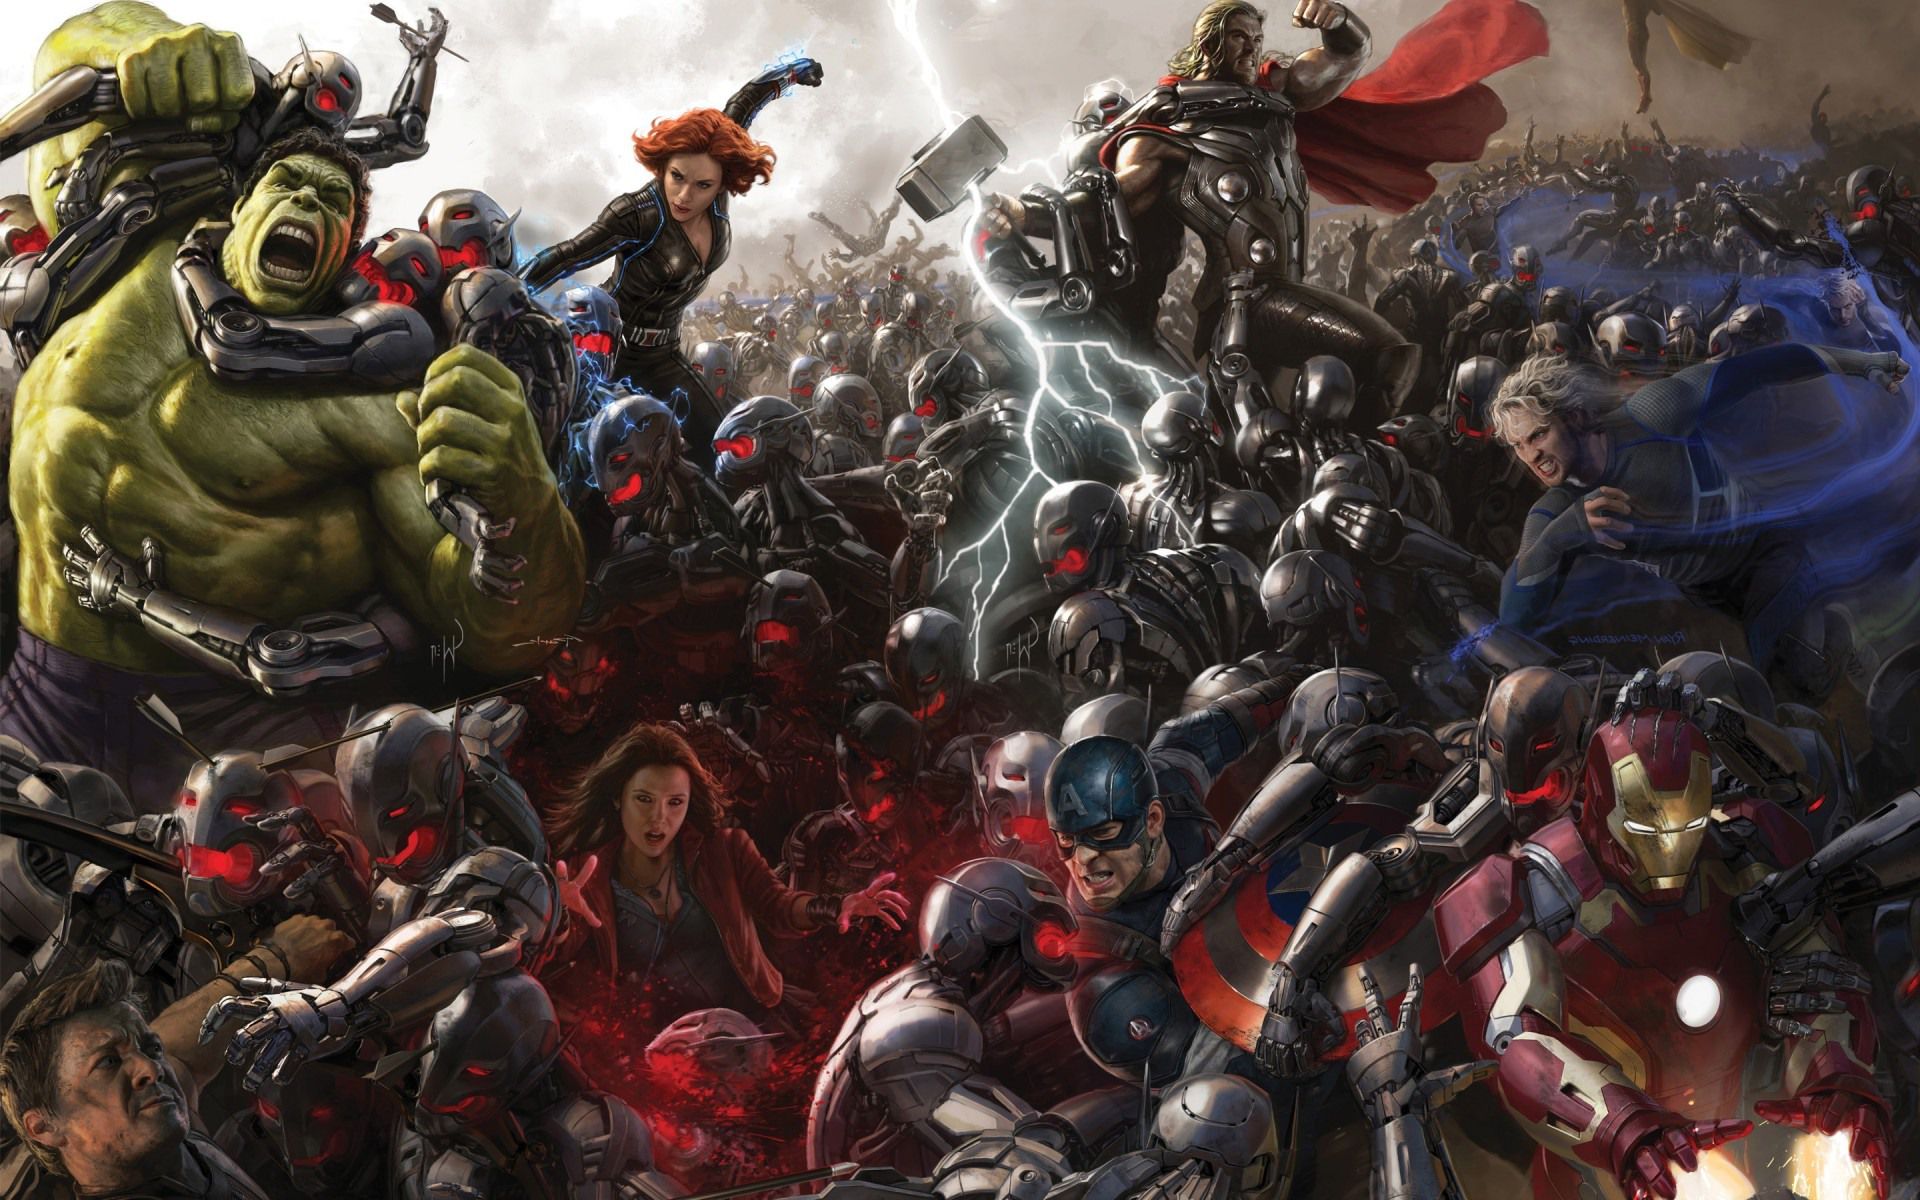 Avengers-Age-of-Ultron-art-poster.jpg